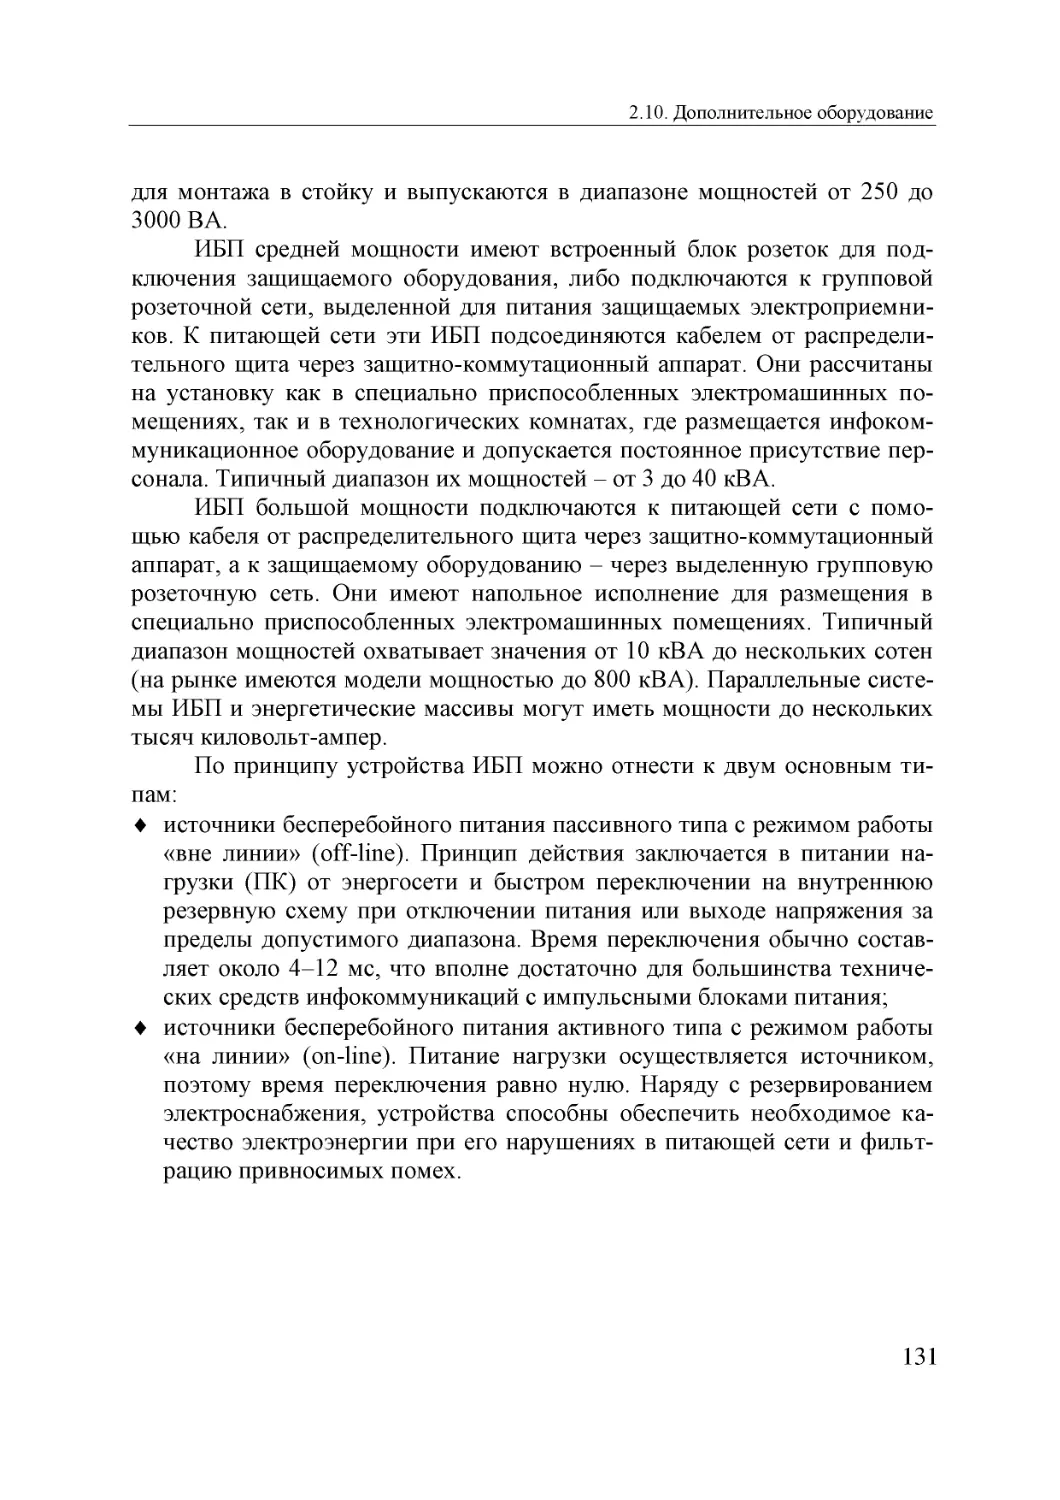 Informatika_Uchebnik_dlya_vuzov_2010 131